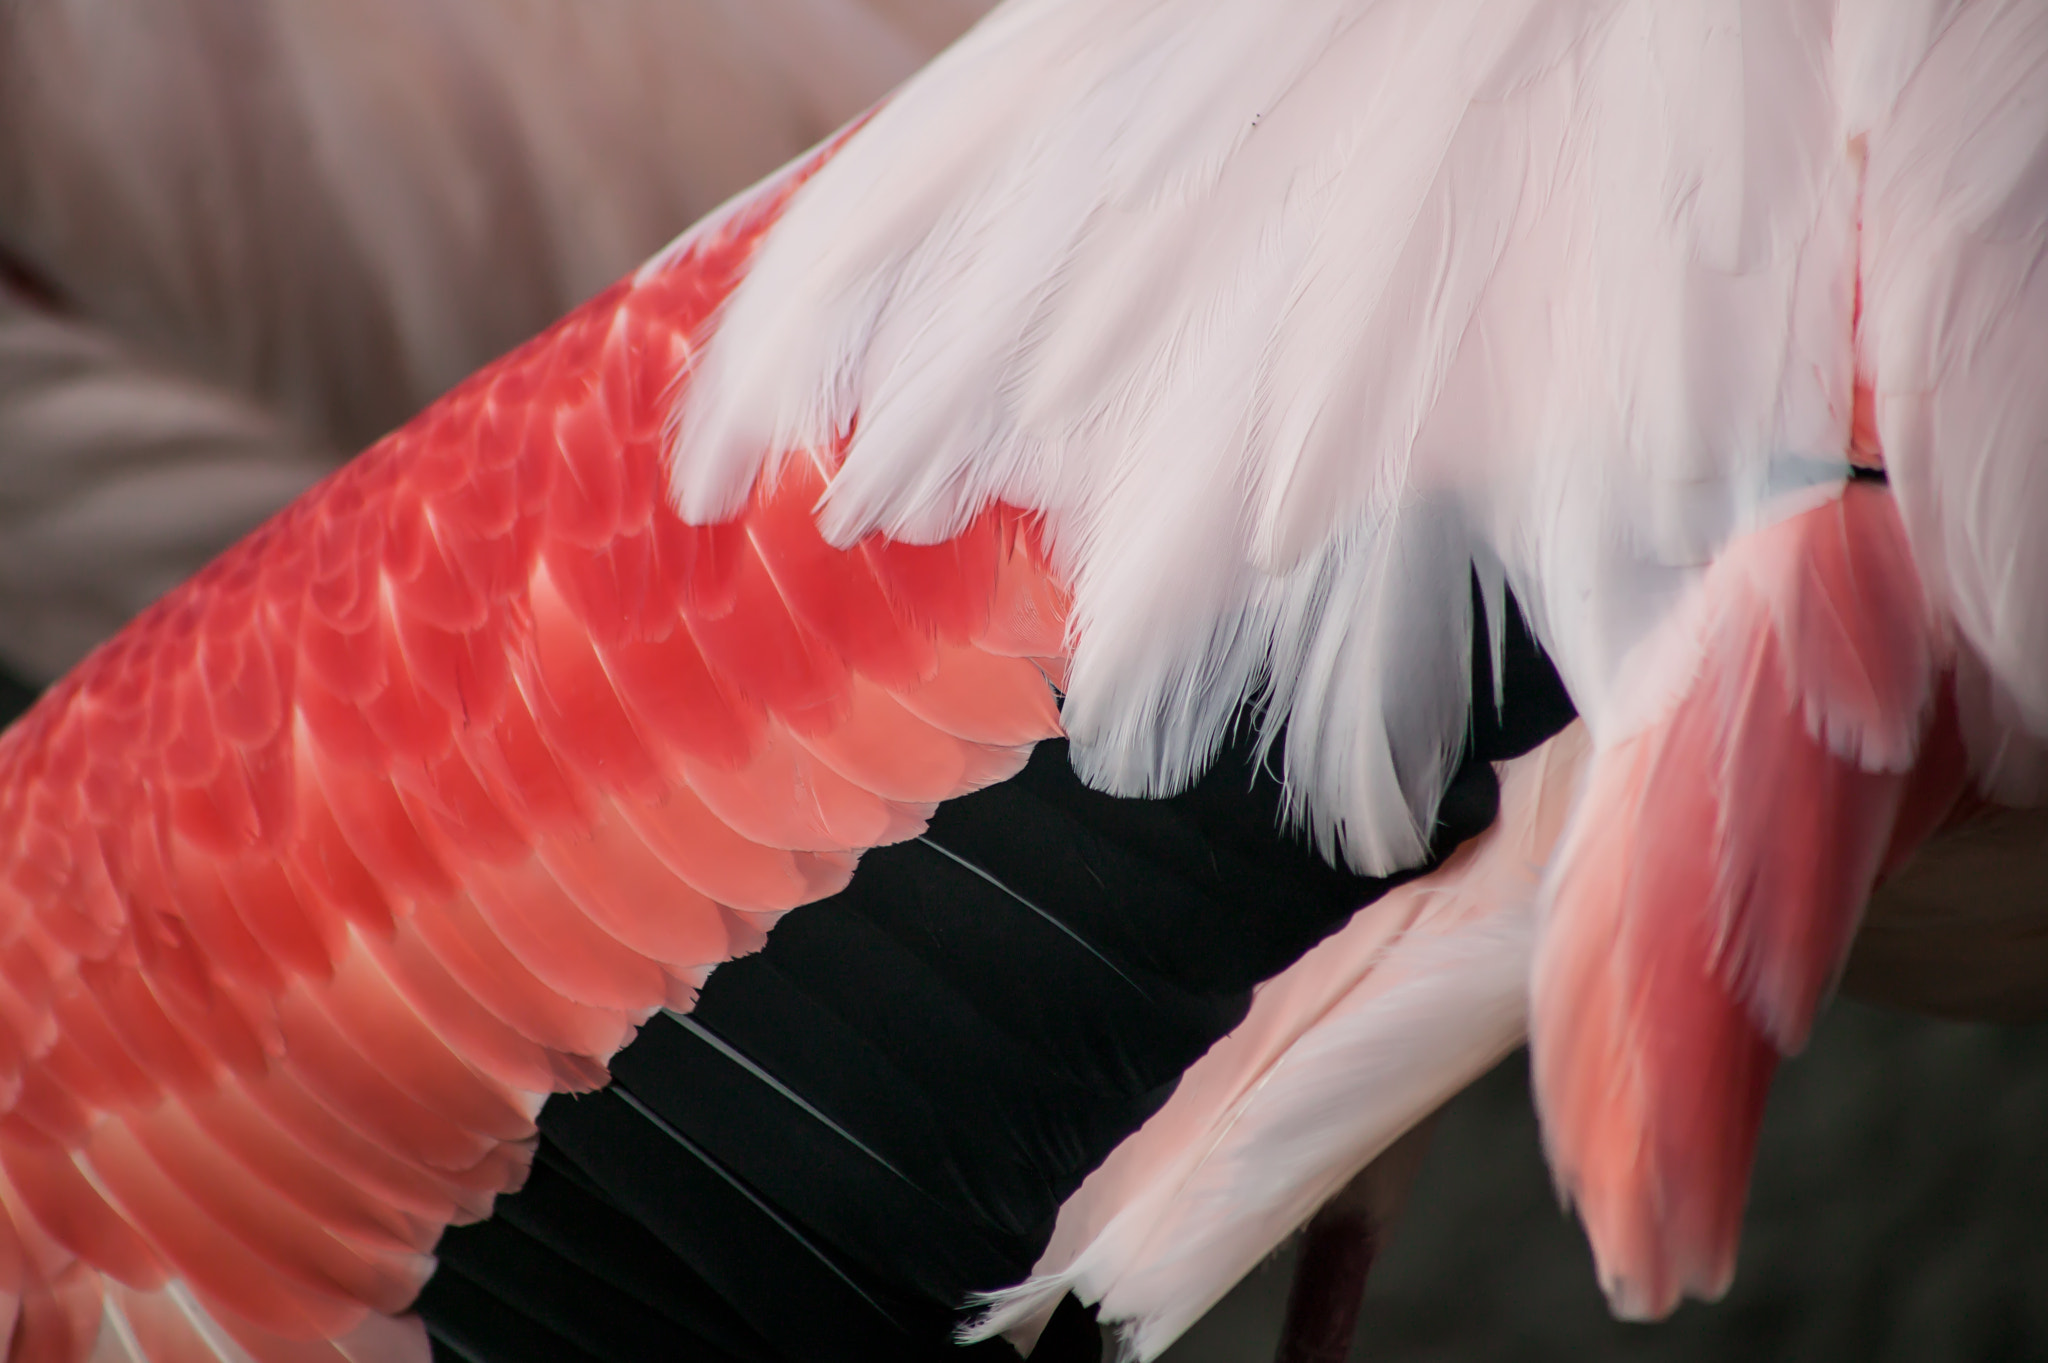 Canon EOS-1Ds sample photo. Federkleid von einem flamingo photography